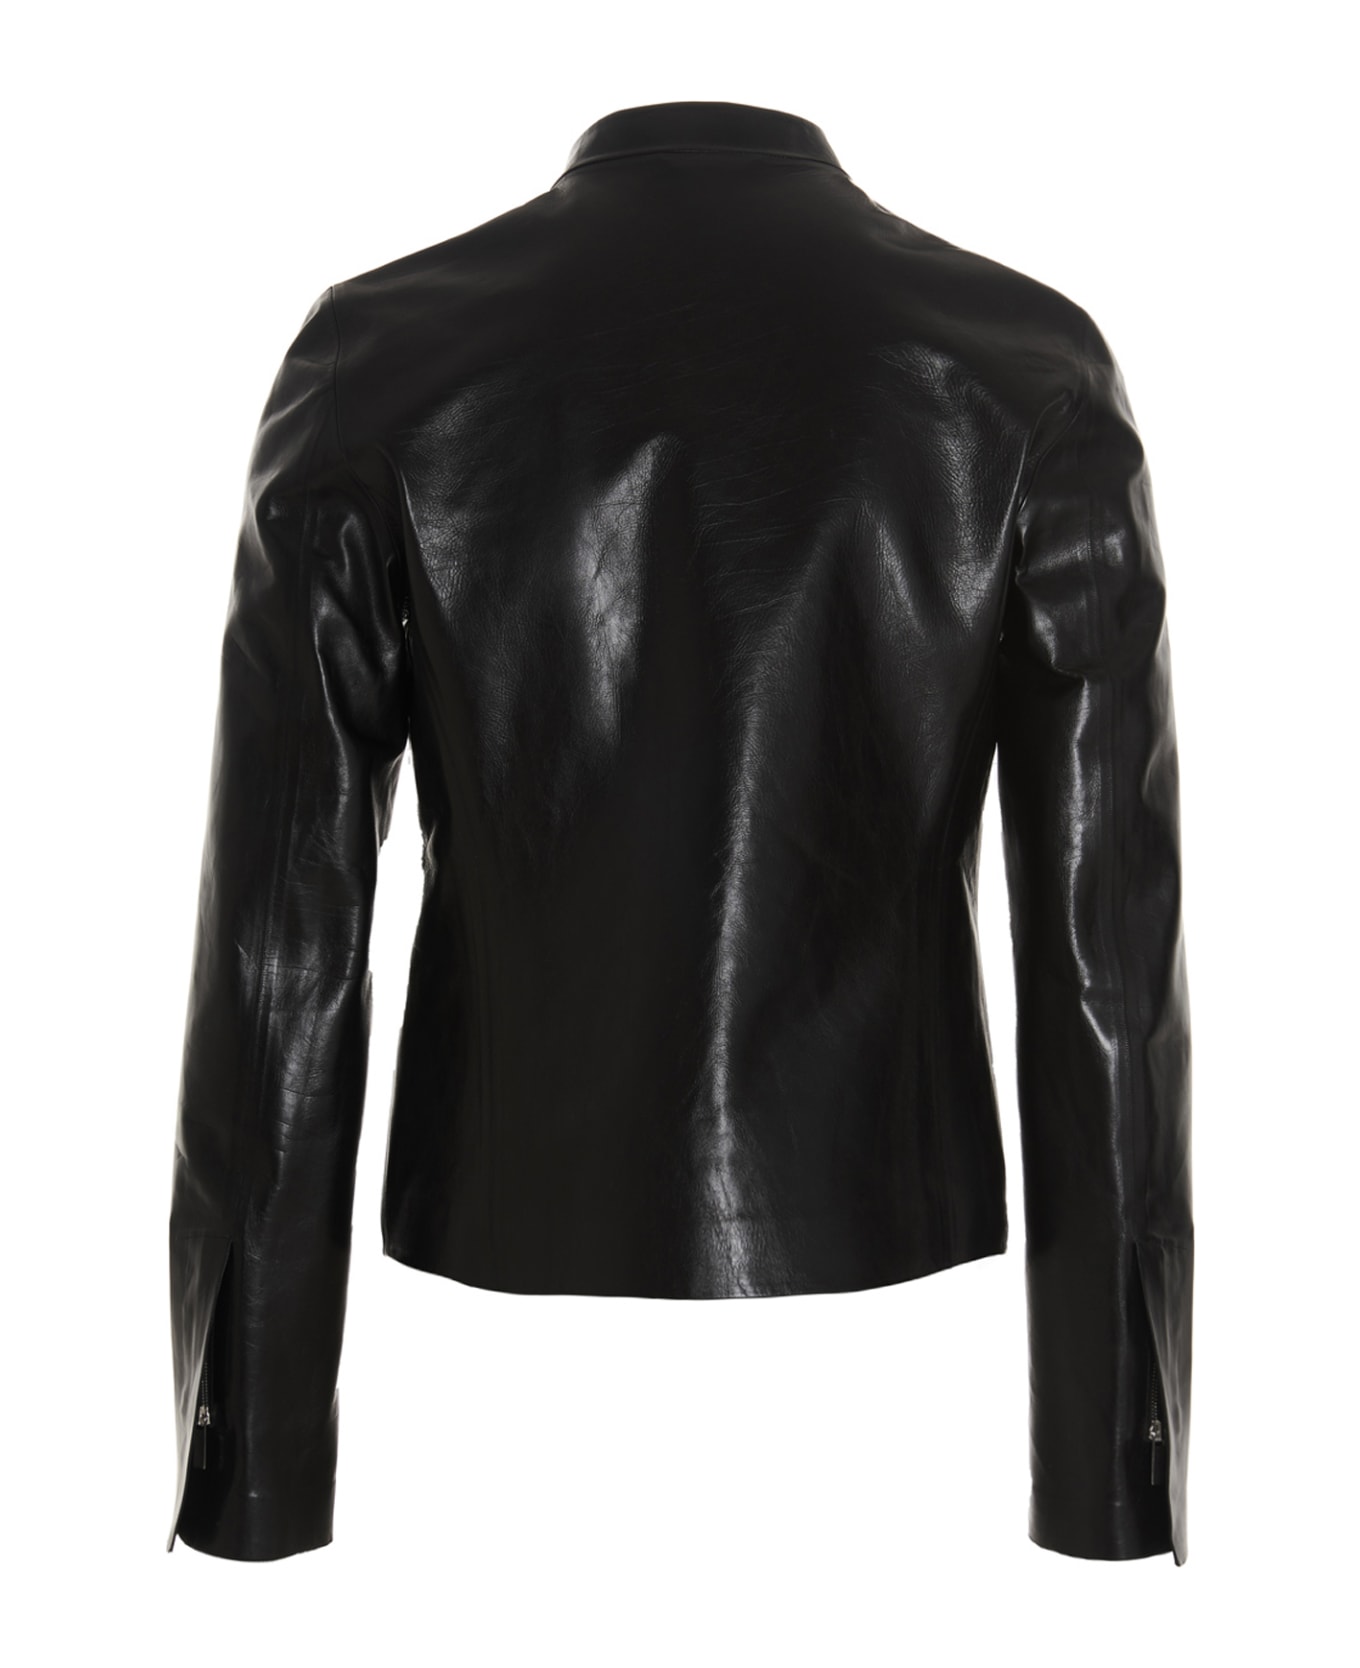 Sapio Leather Jacket - Black  